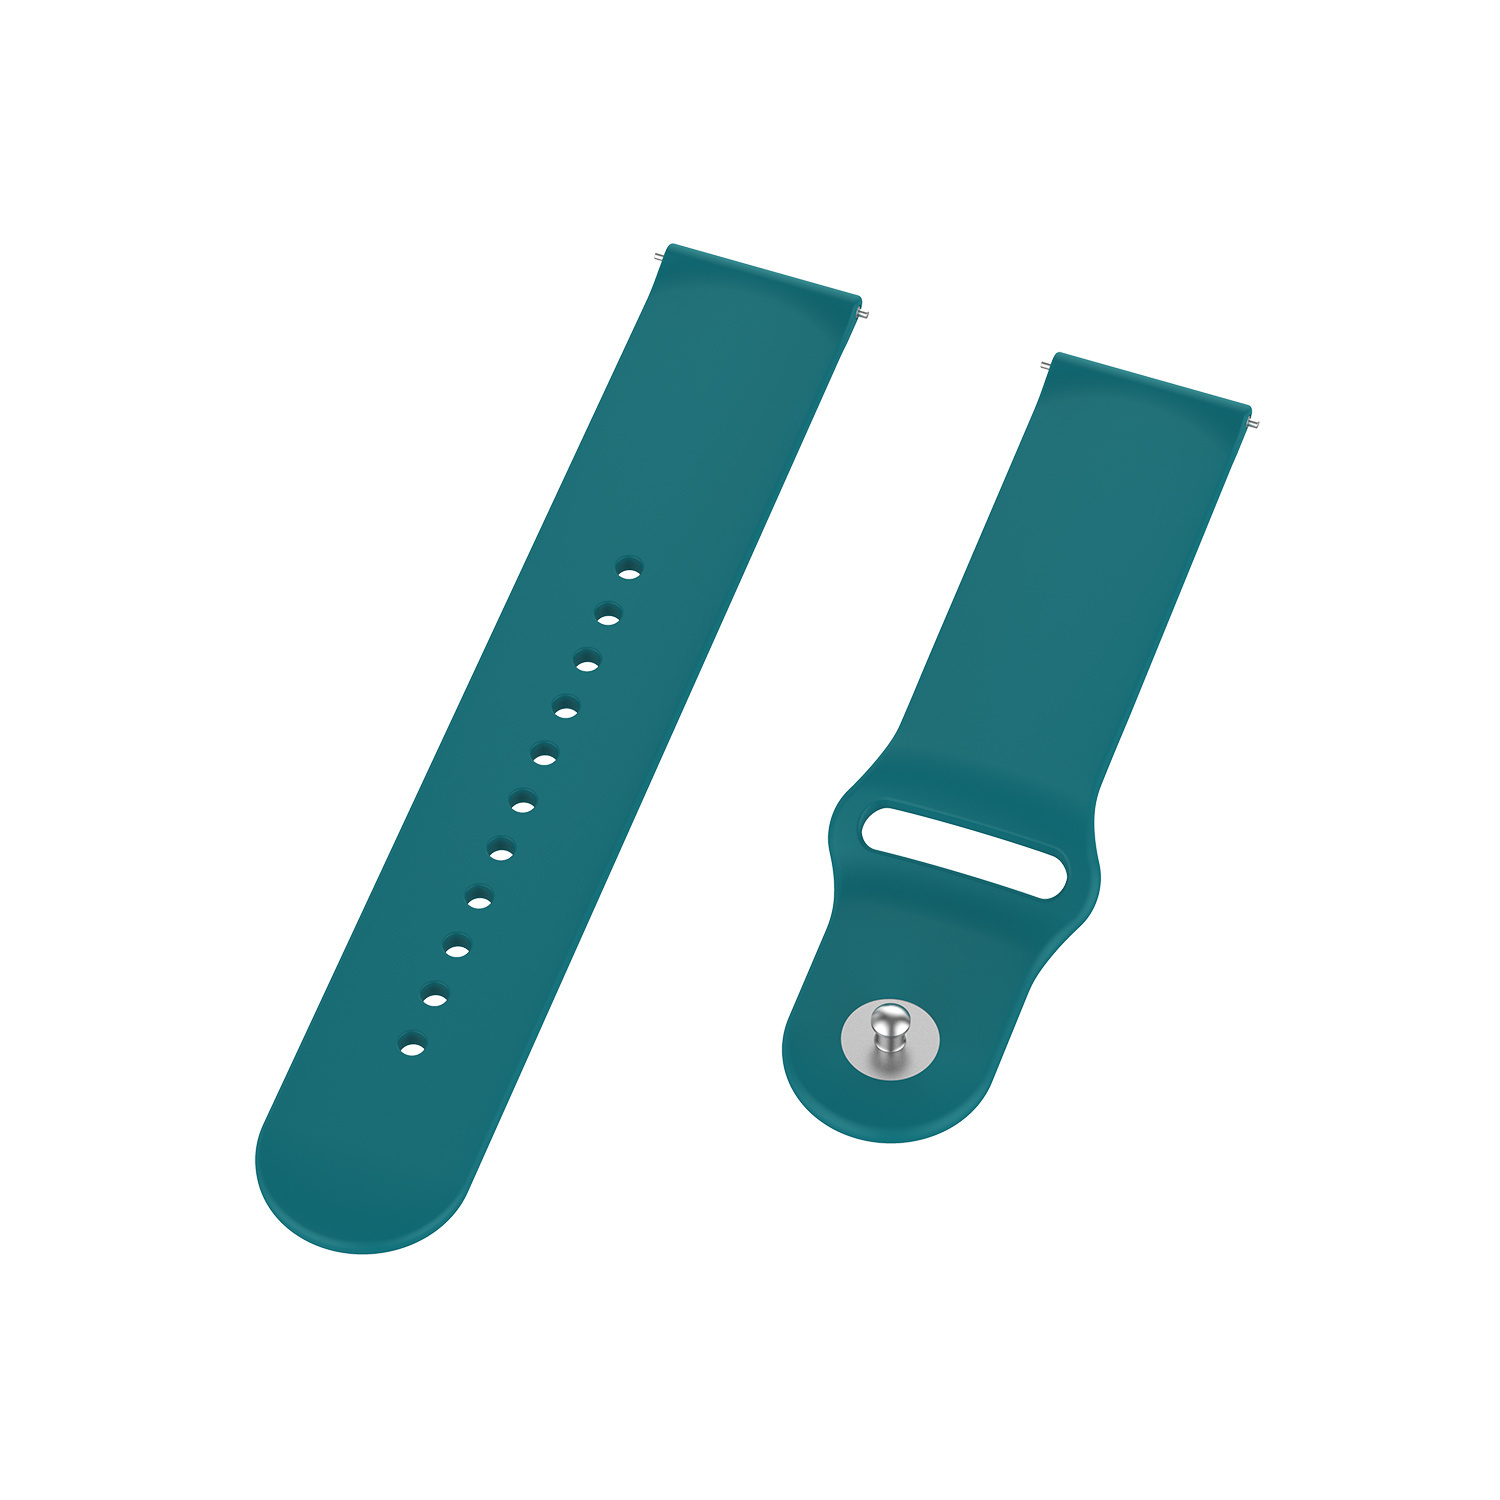 Correa deportiva de silicona para el Samsung Galaxy Watch - verde